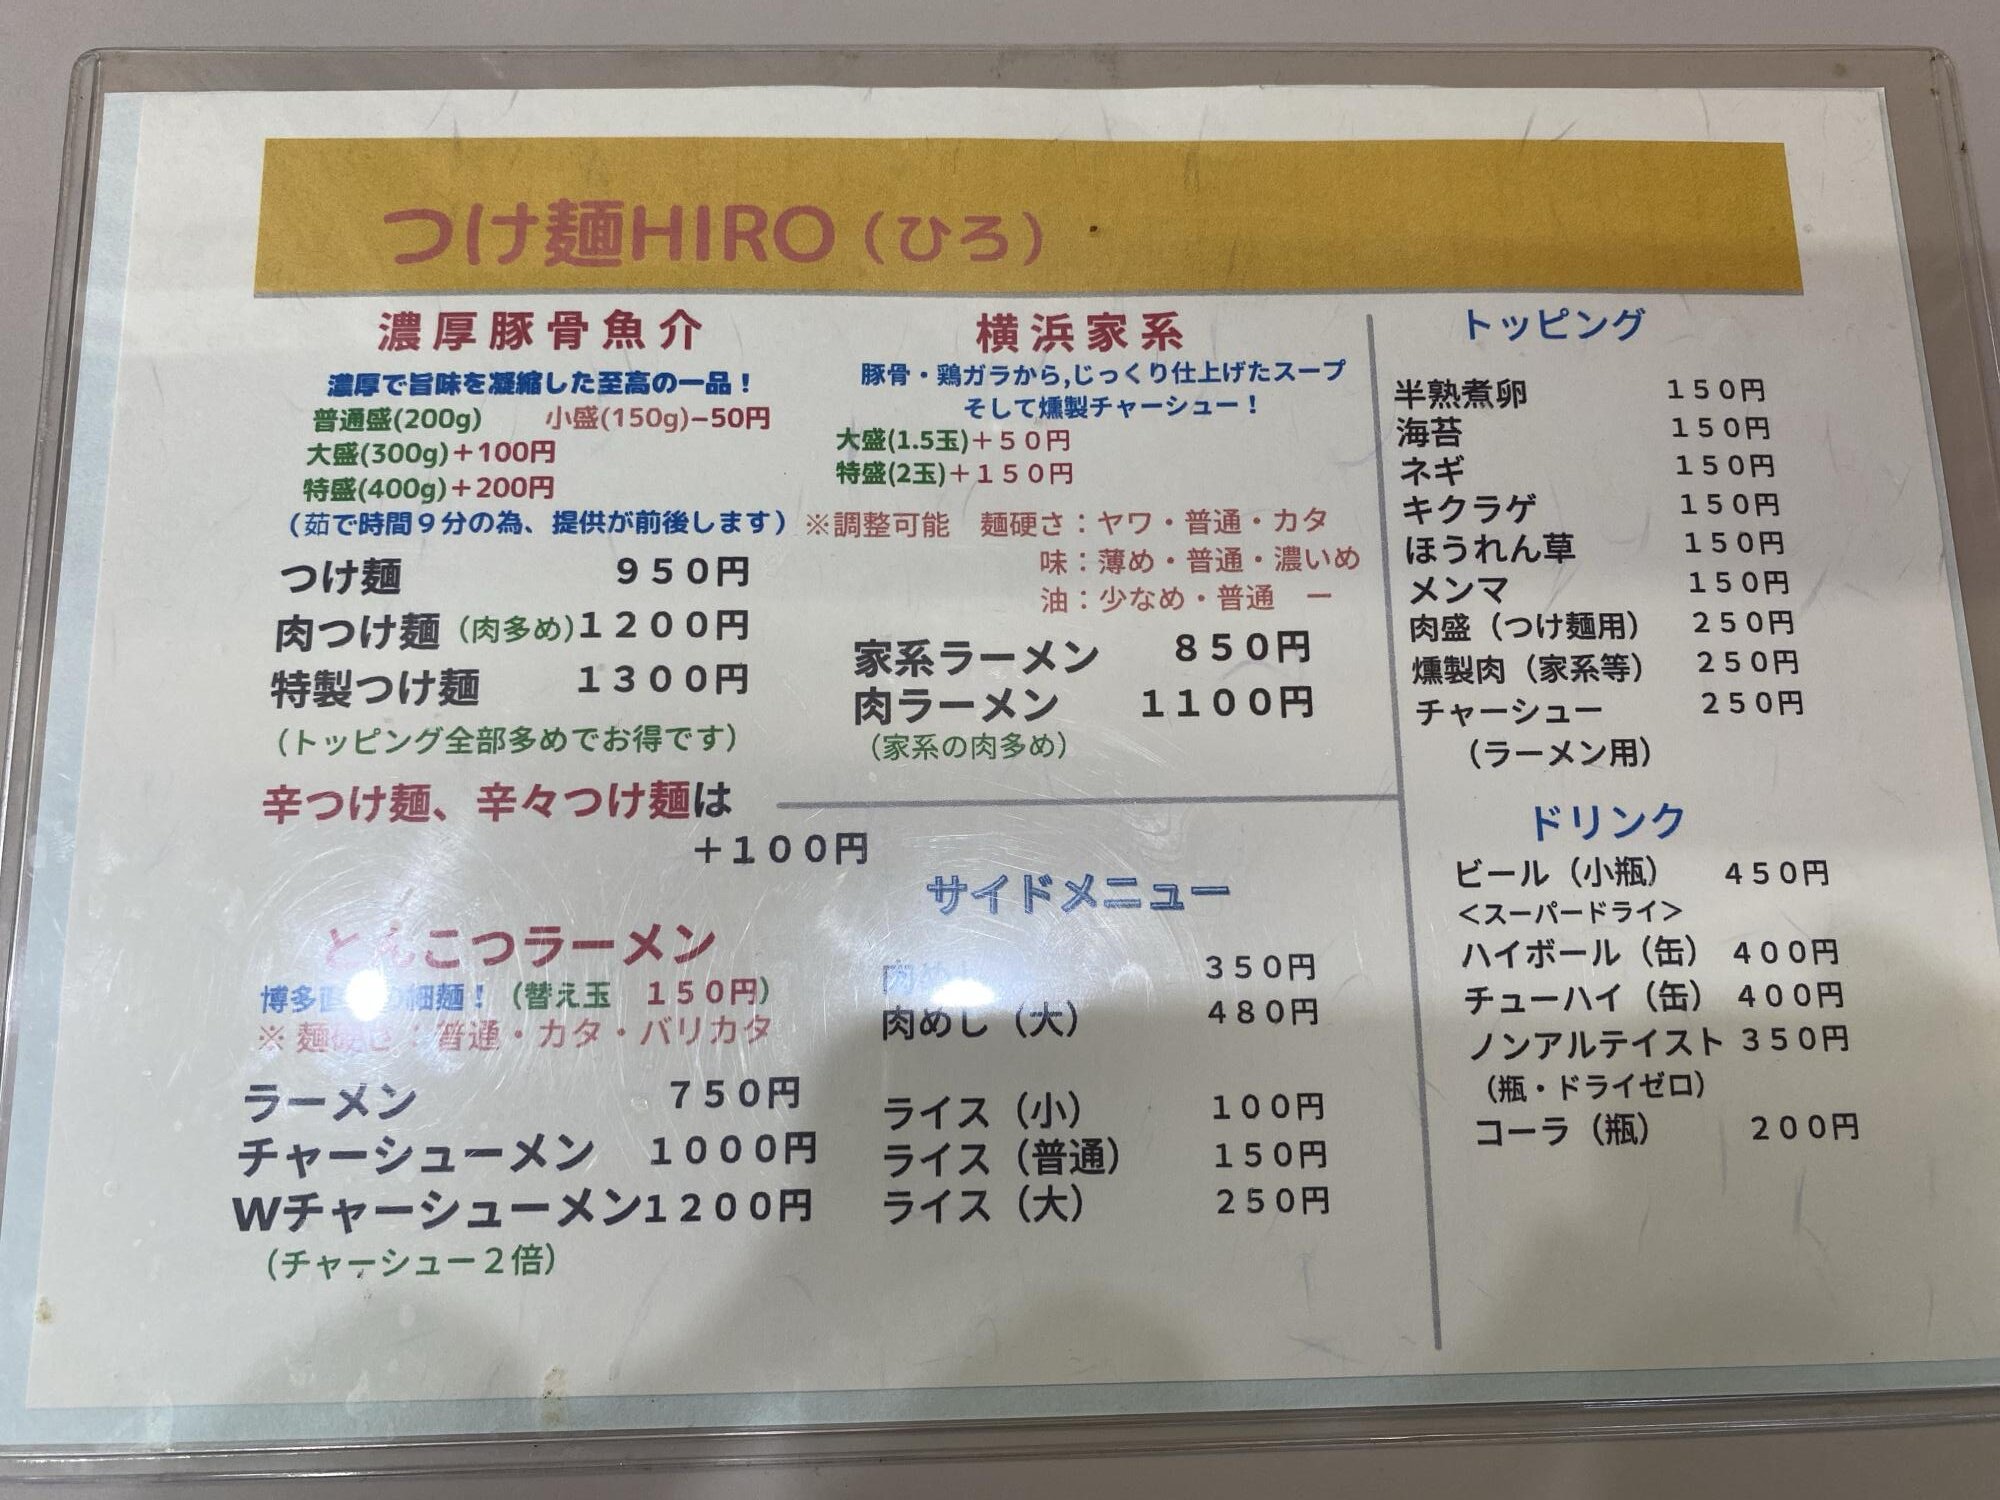 オススメのつけ麺以外に、横浜家系ラーメン、とんこつラーメンなどがあります。